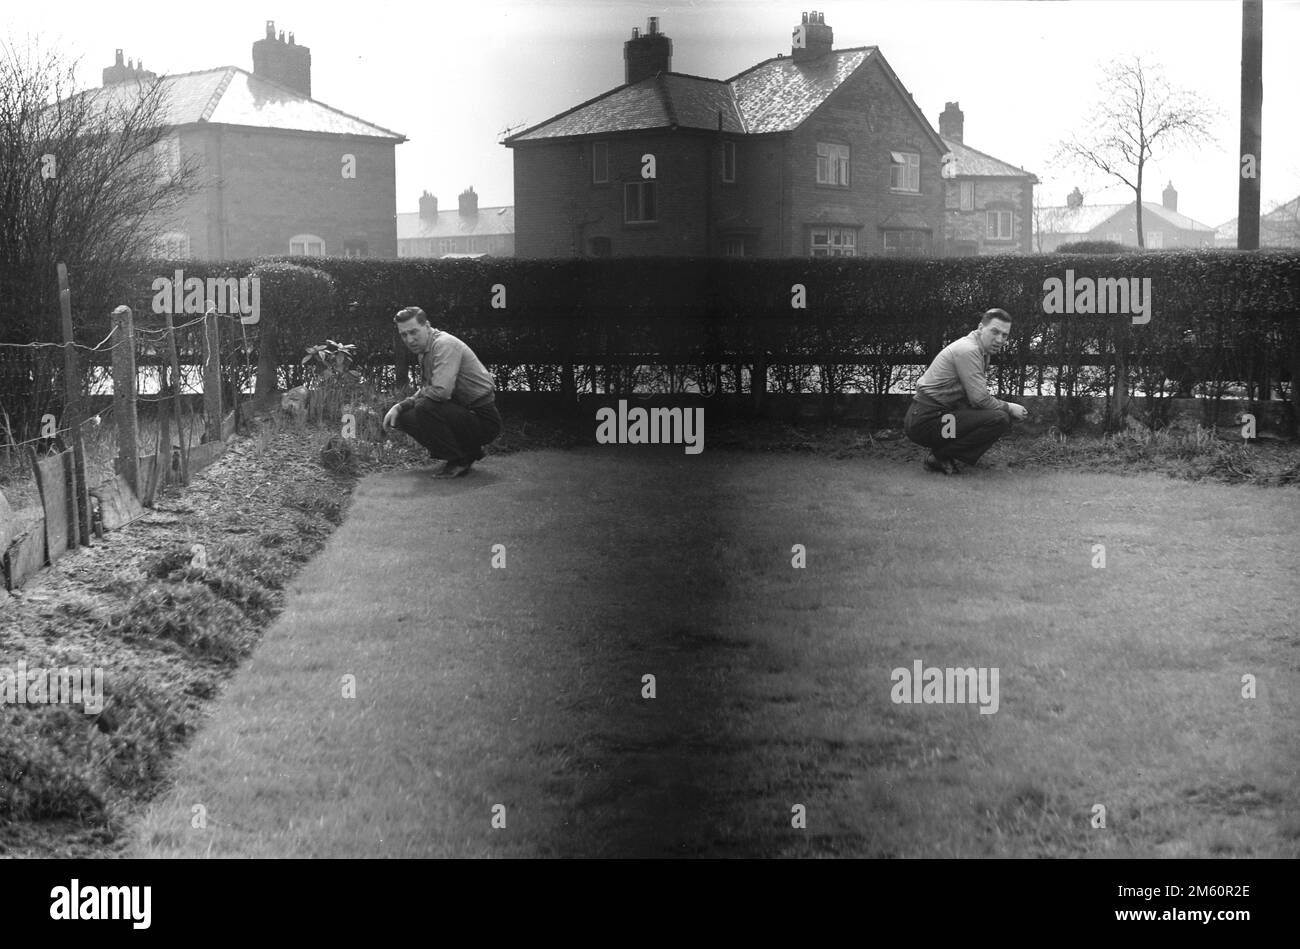 Anni '1950, fotografia storica, amatoriale, un'immagine che mostra una doppia esposizione, un uomo o due uomini inginocchiati in un giardino sul retro, Inghilterra, Regno Unito. Foto Stock